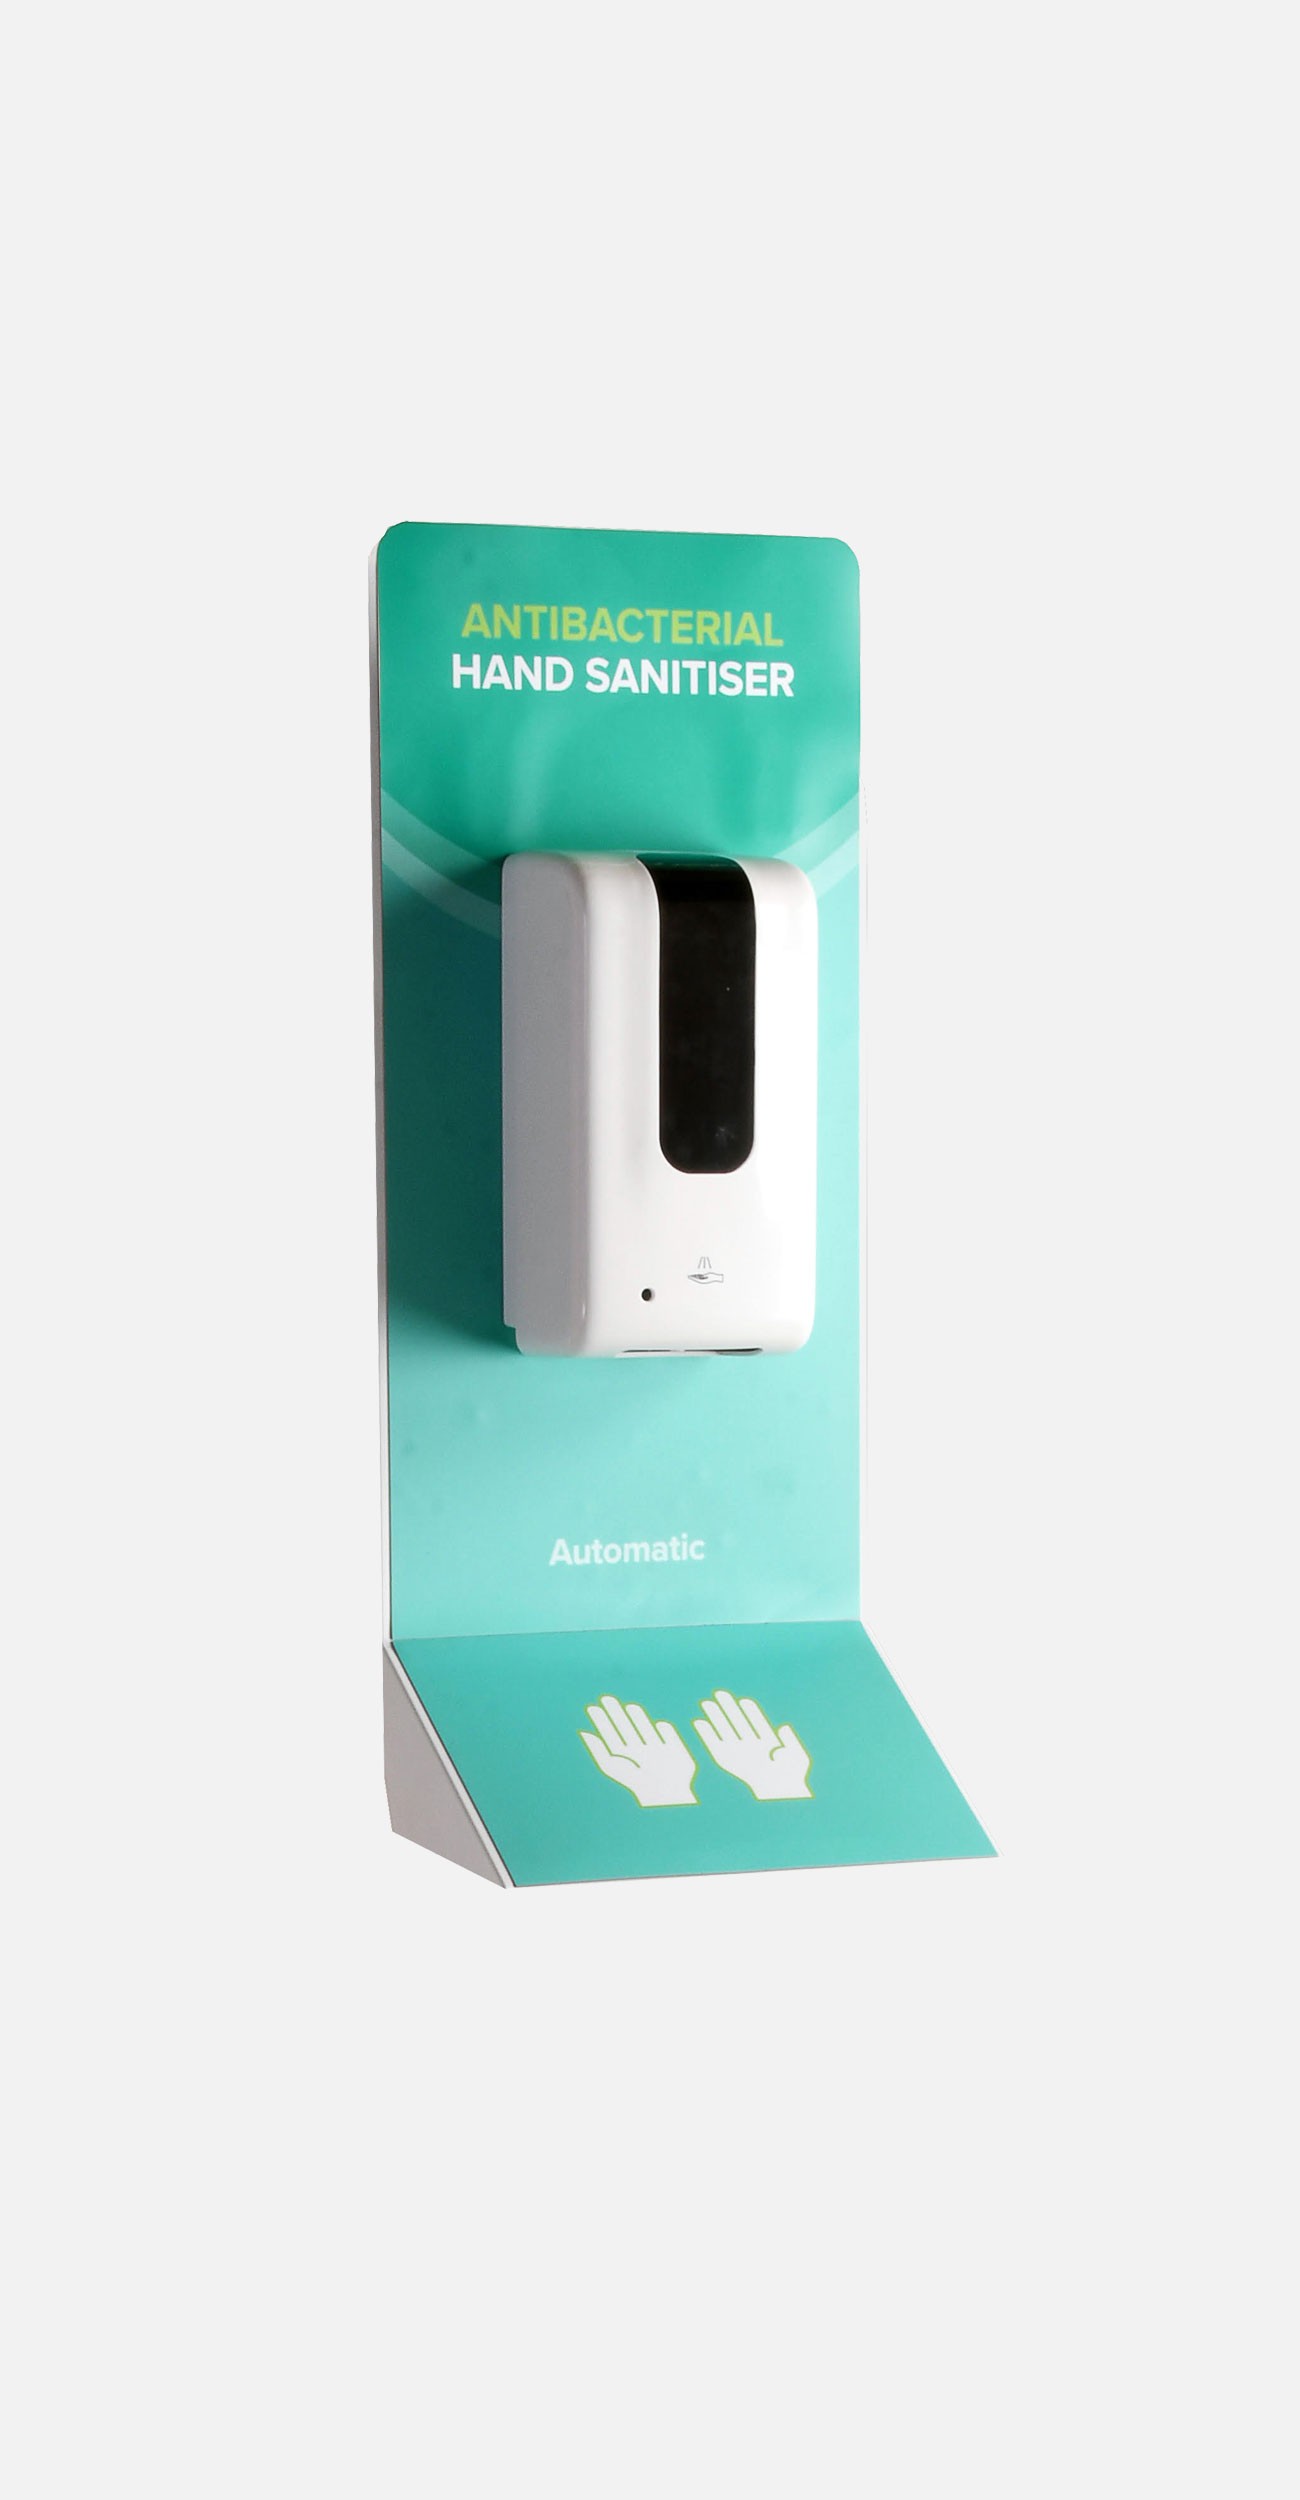 A wall mounted hand sanitiser dispenser unit